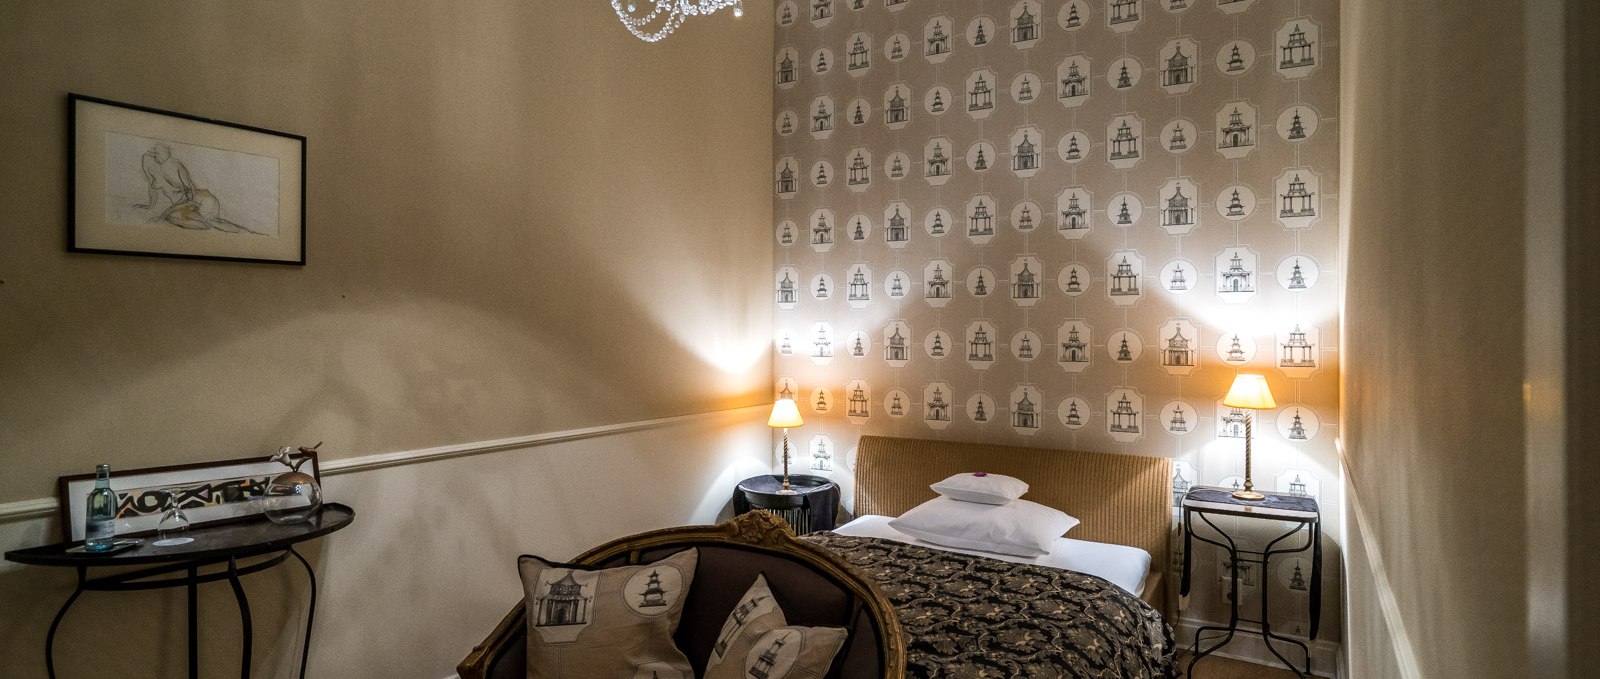 Stilvol eingerichtetes Zimmer im Schlosshotel Marihn, © Copyright DOMUSimages UG